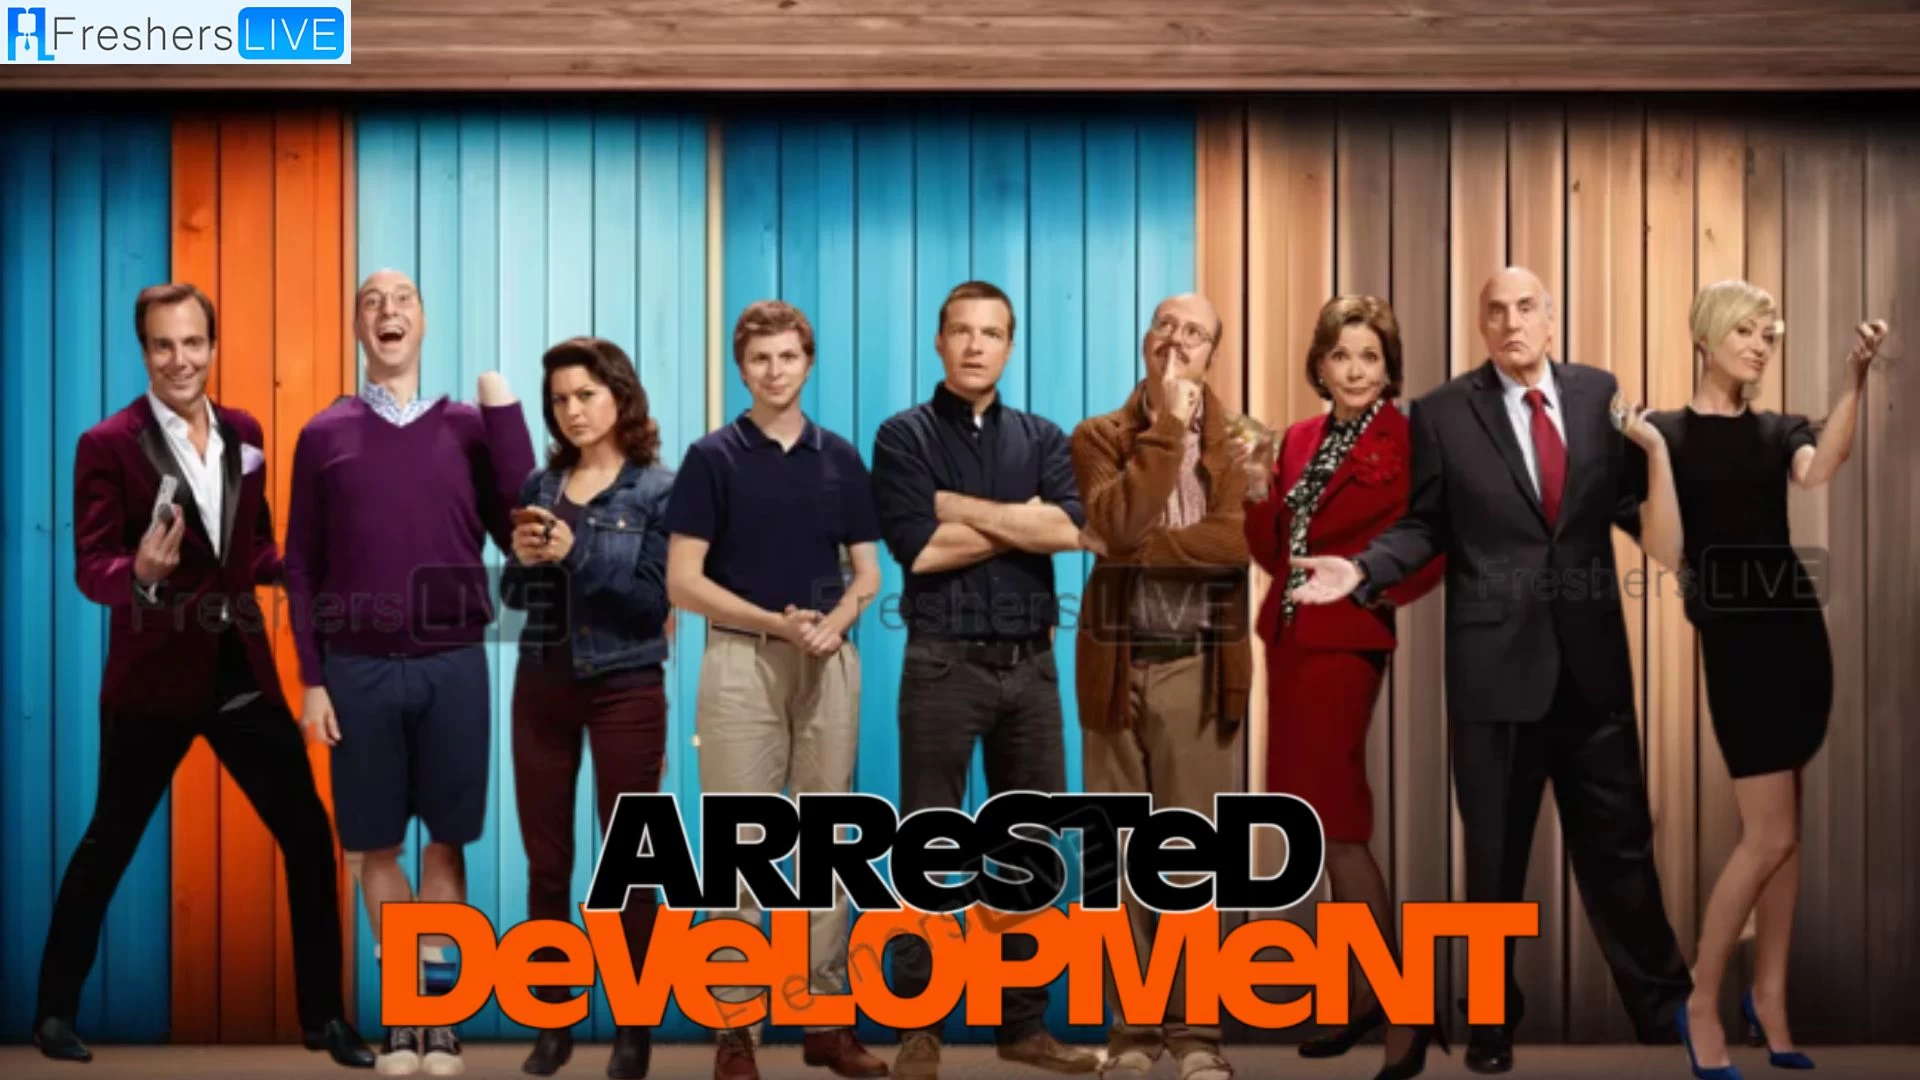 ¿Arrested Development dejará Hulu?  ¿Cómo observar el desarrollo detenido?